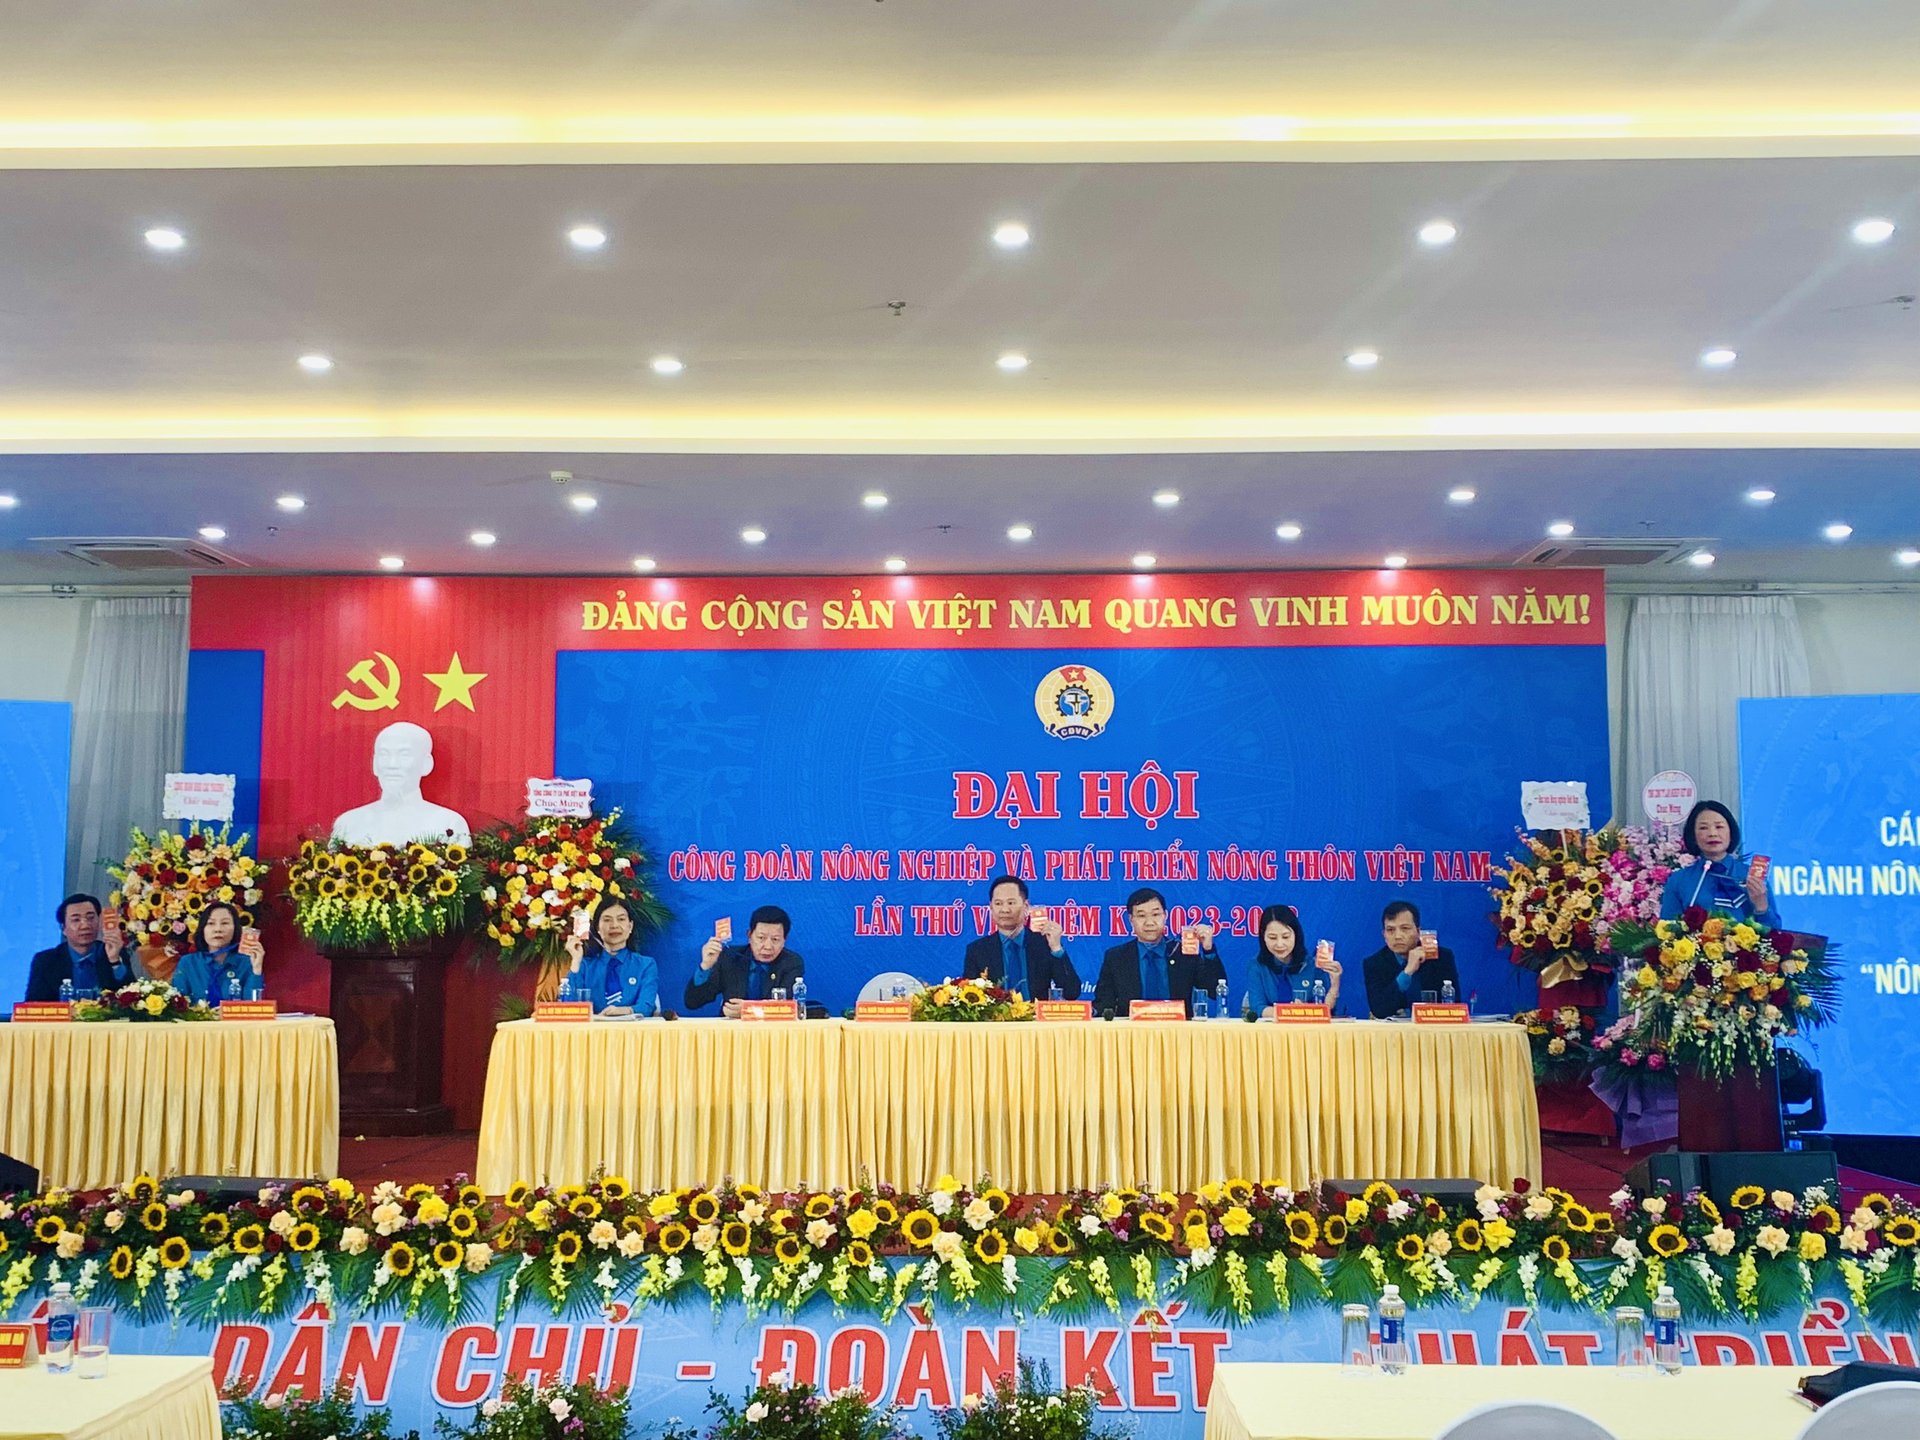 Đại hội Công đoàn NN-PTNT Việt Nam lần thứ VI diễn ra 2 ngày, từ 8-9/10 tại Hà Nội với phương châm 'Đổi mới - Dân chủ - Đoàn kết - Phát triển'. 